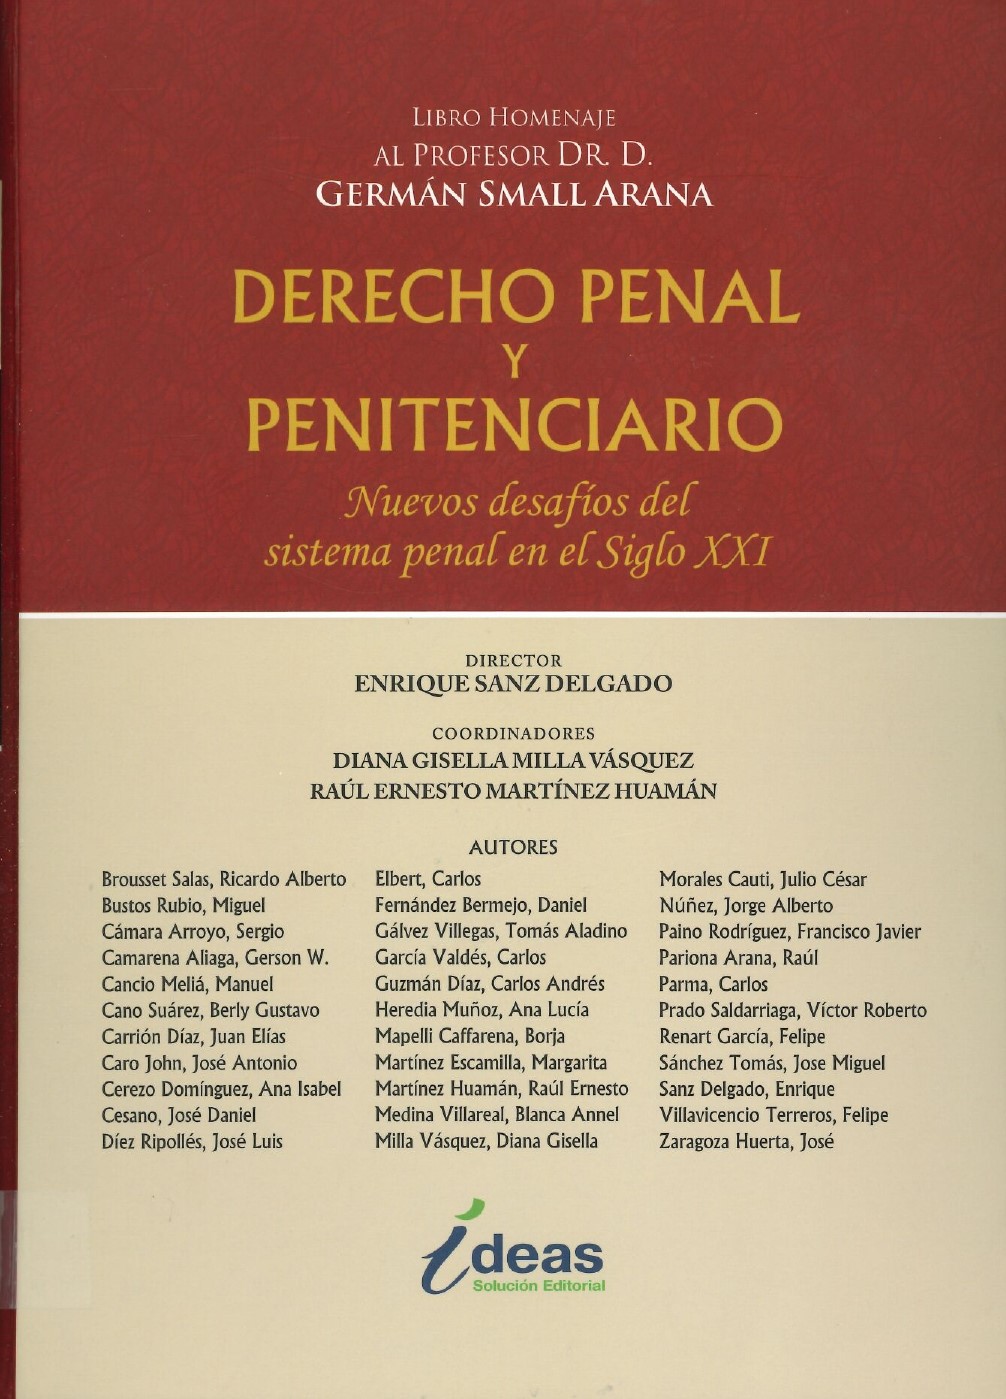 Imagen de portada del libro Derecho penal y penitenciario